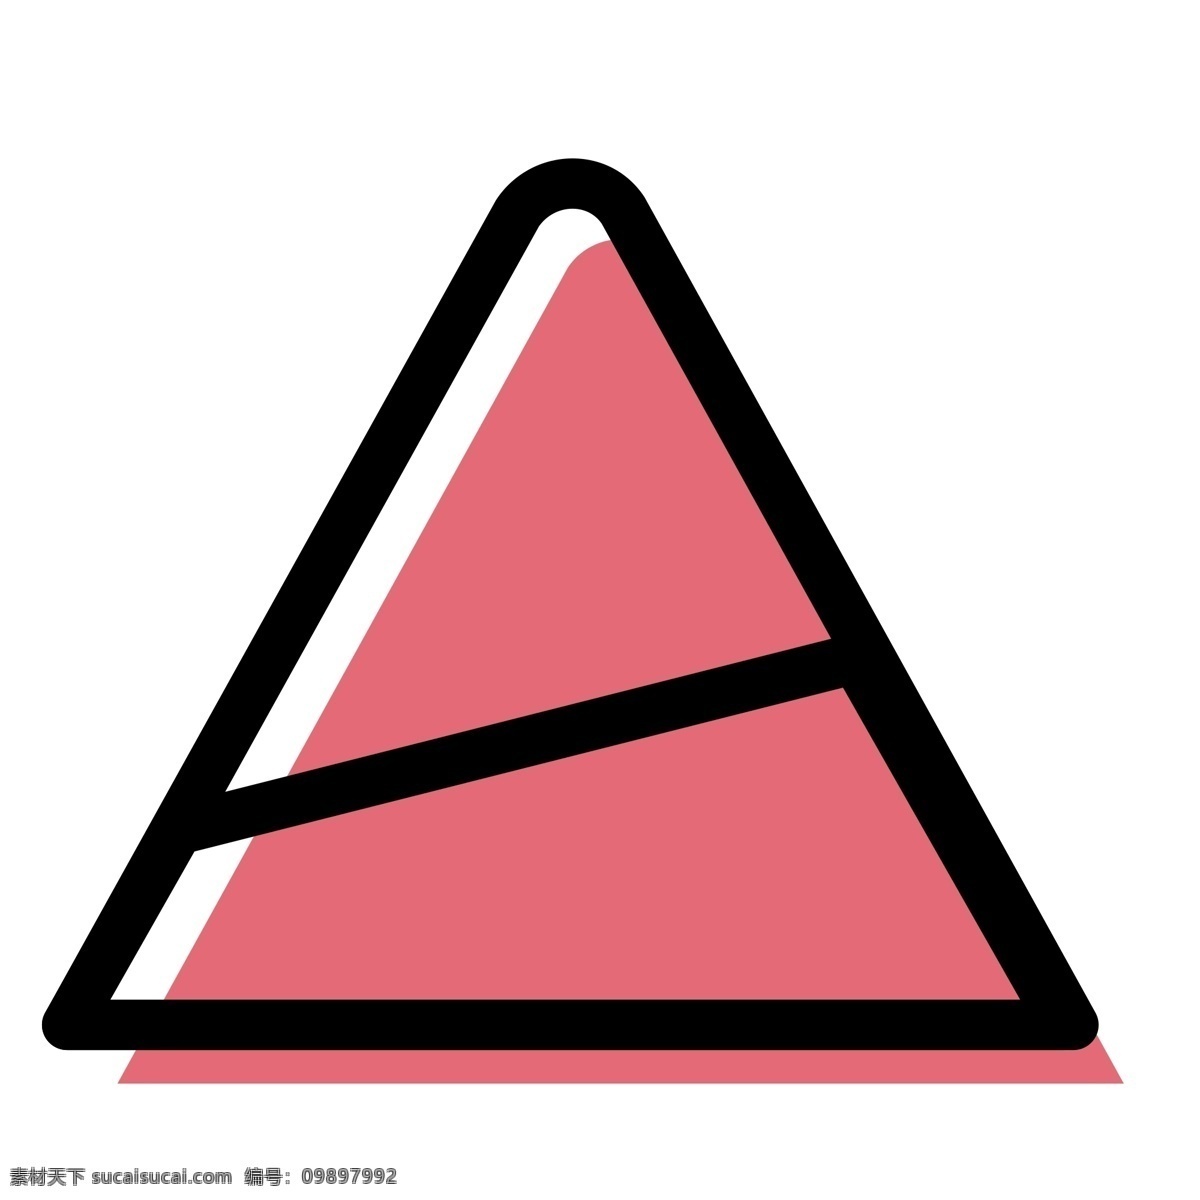 扁平化三角标 三角标 提示牌 扁平化ui ui图标 手机图标 界面ui 网页ui h5图标